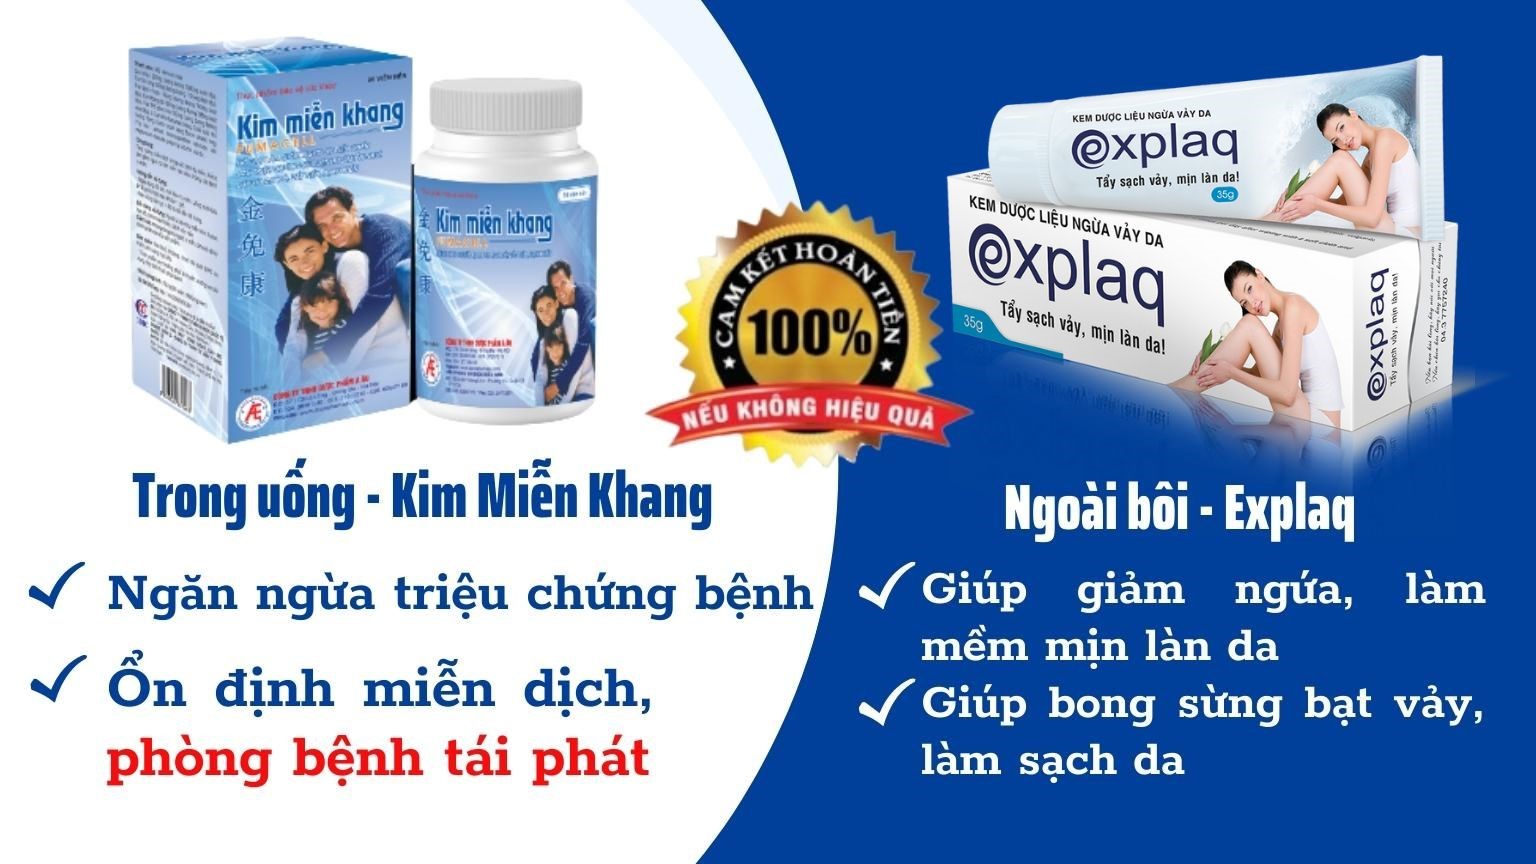 Bộ đôi sản phẩm Kim Miễn Khang & Explaq - giải pháp toàn diện cho người bệnh vảy nến.jpg